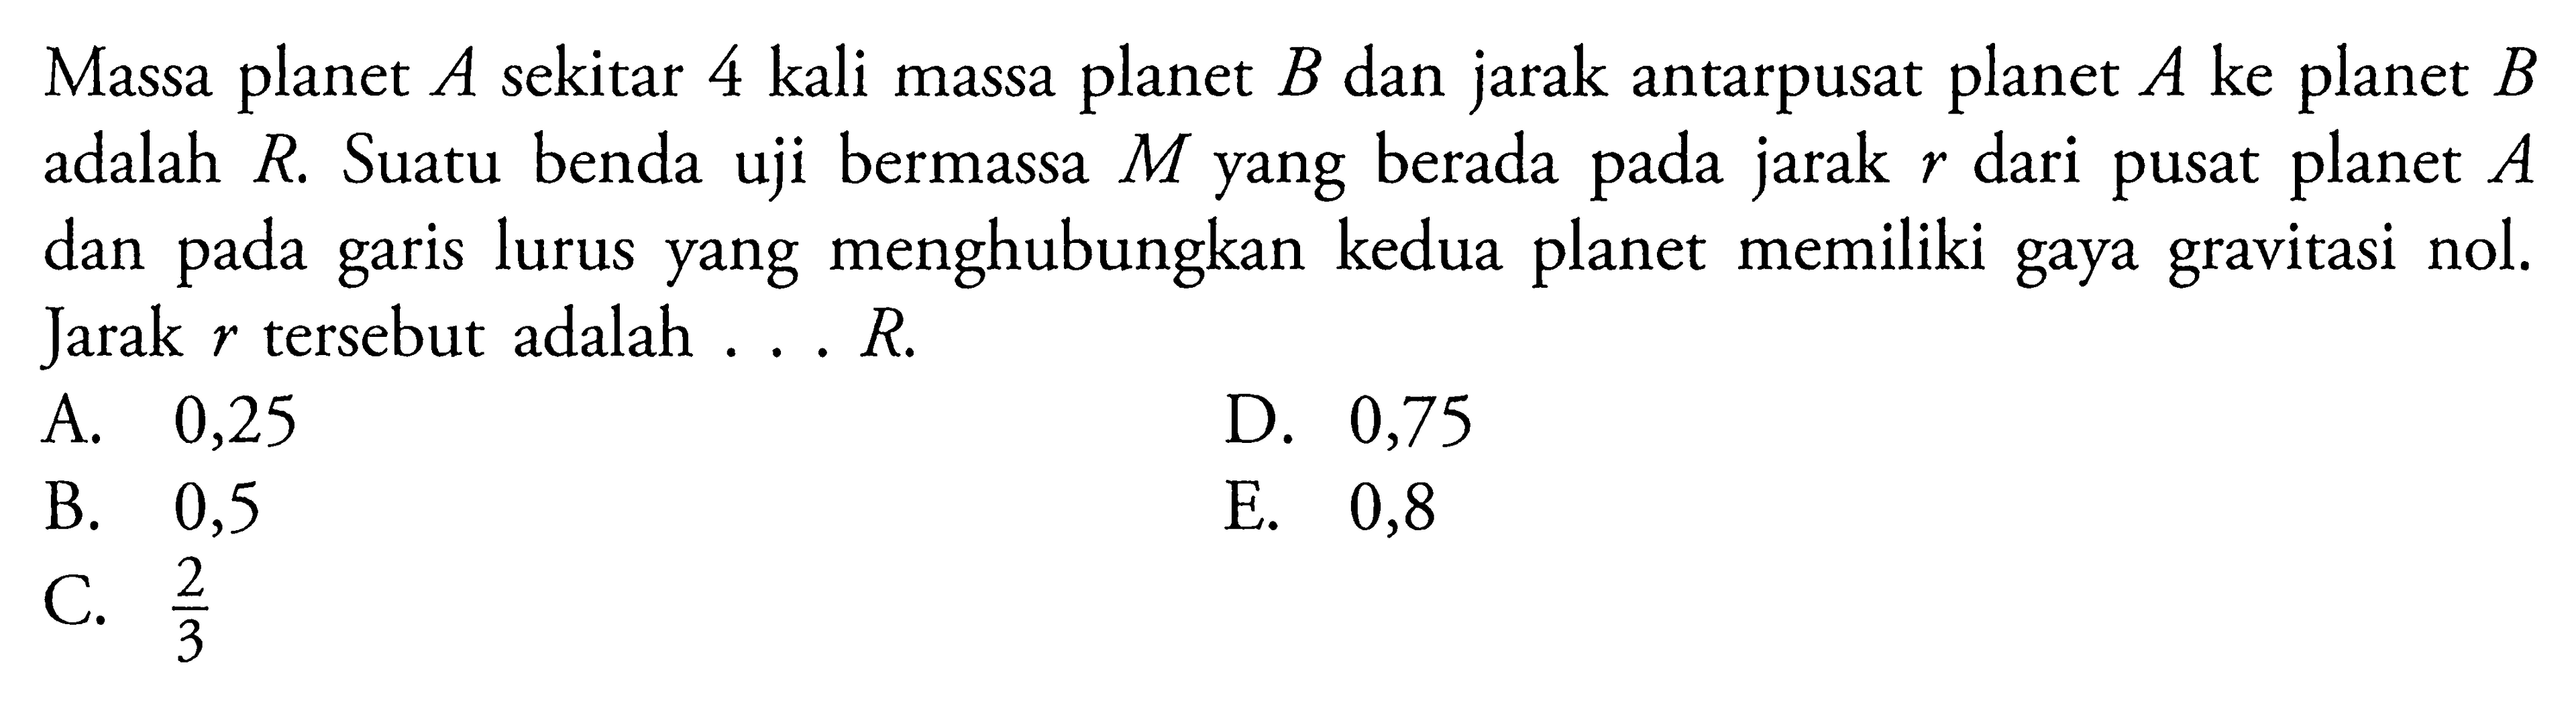 Massa planet A sekitar 4 kali massa planet B dan jarak antarpusat planet A ke planet B adalah R. Suatu benda uji bermassa M yang berada pada jarak r dari pusat planet A dan pada garis lurus yang menghubungkan kedua planet memiliki gaya gravitasi nol. Jarak r tersebut adalah....R.